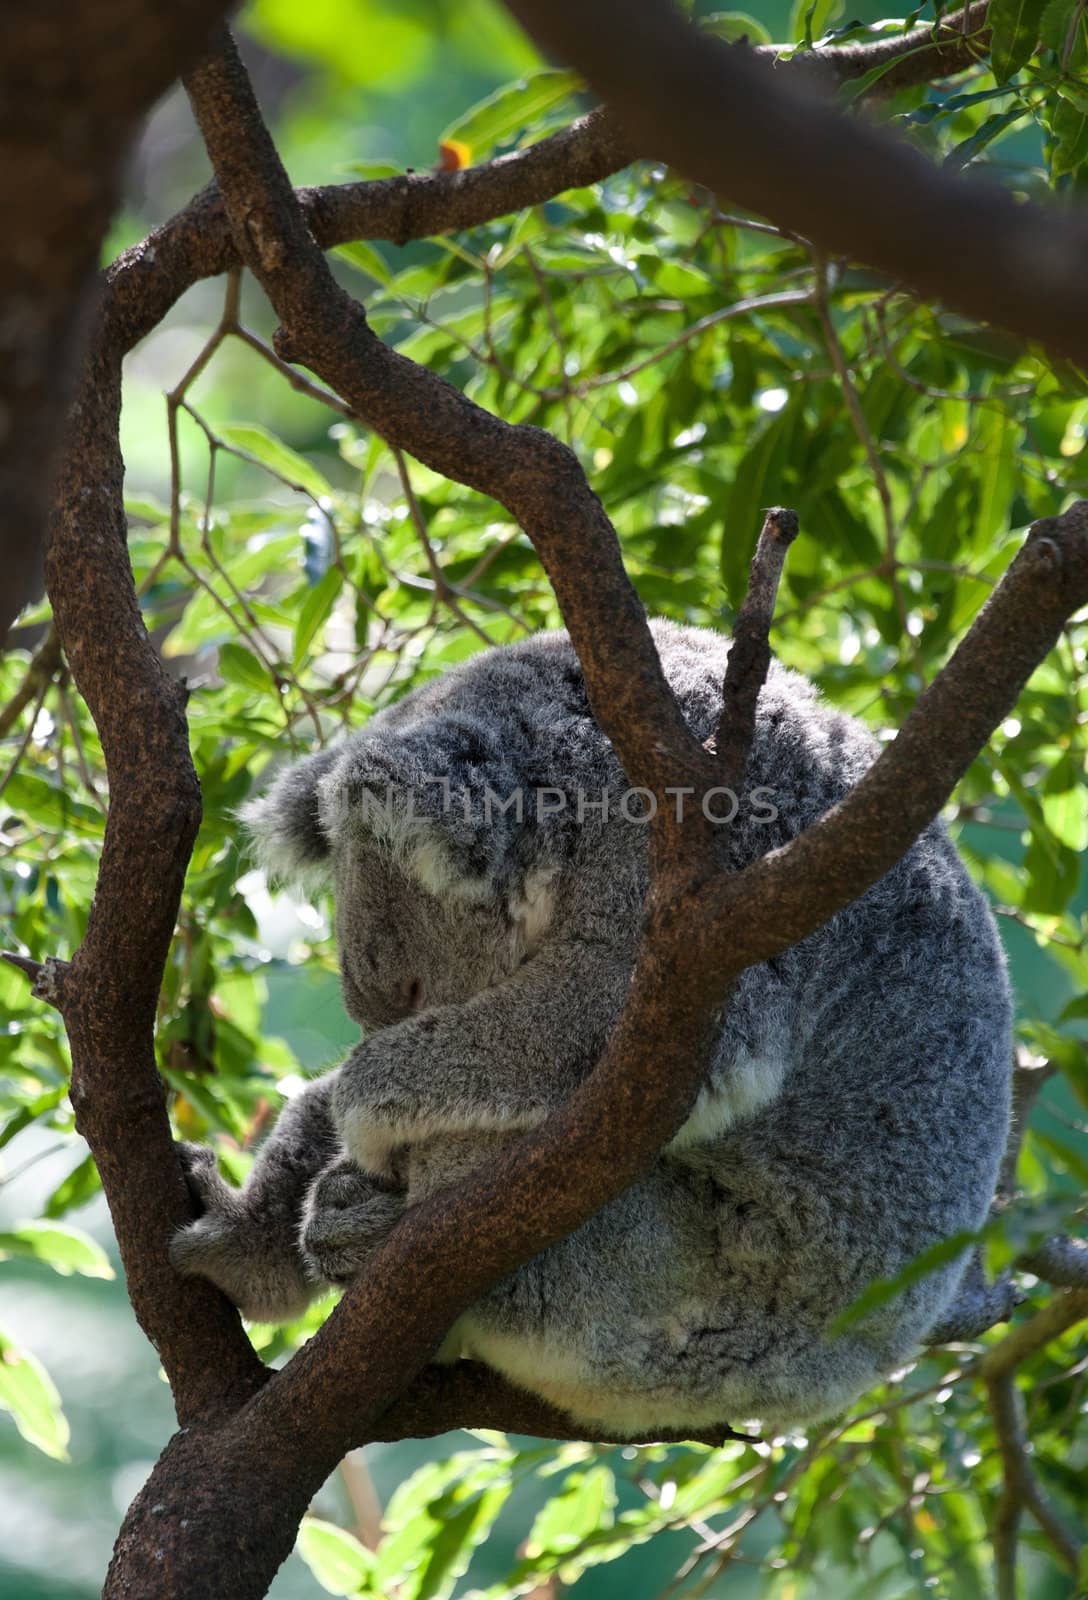 australian koala in a tree by clearviewstock